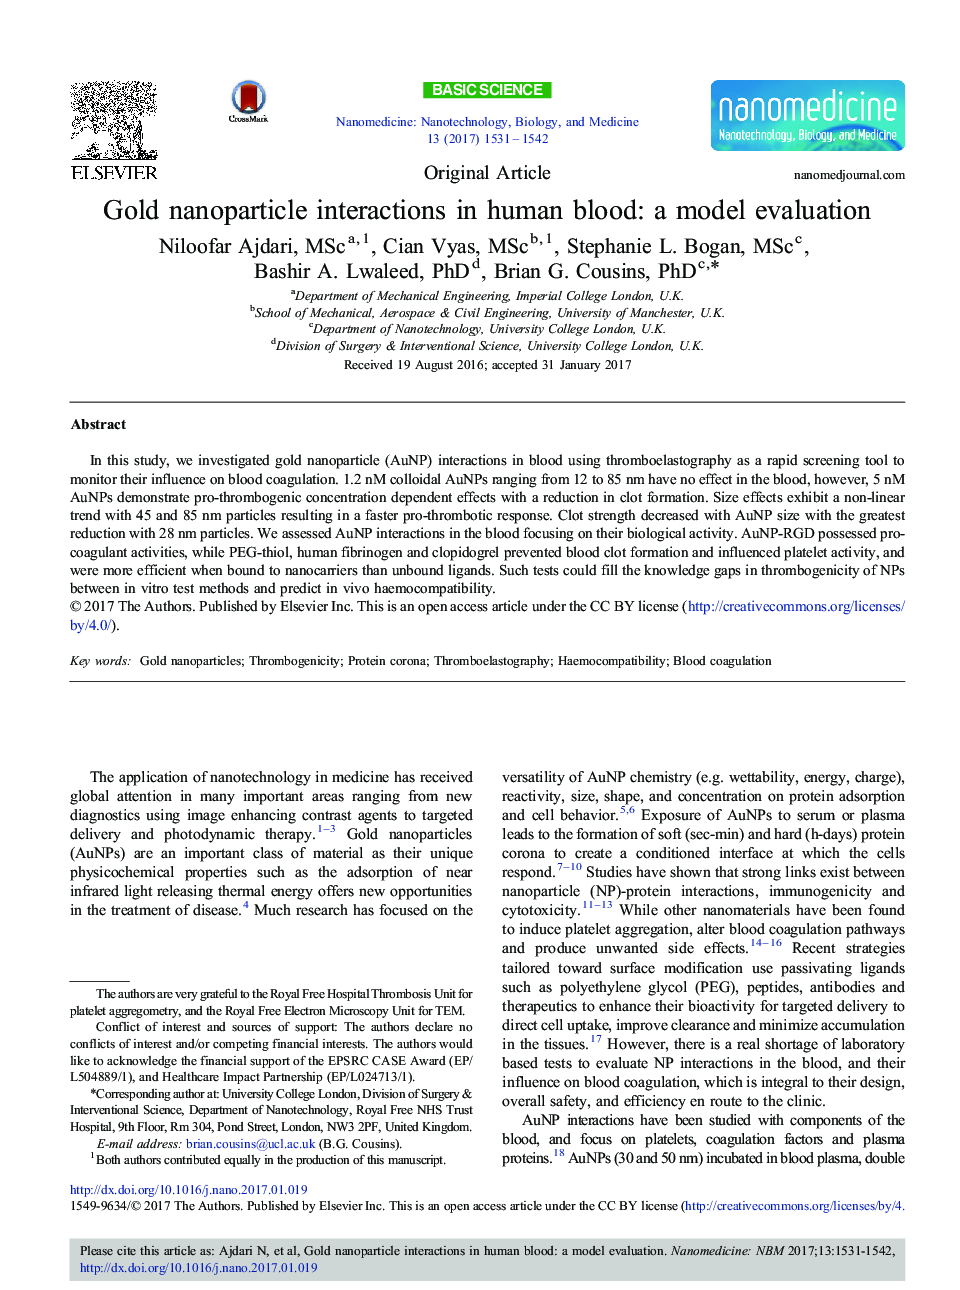 تعاملات نانوذره طلا در خون انسان: ارزیابی مدل 